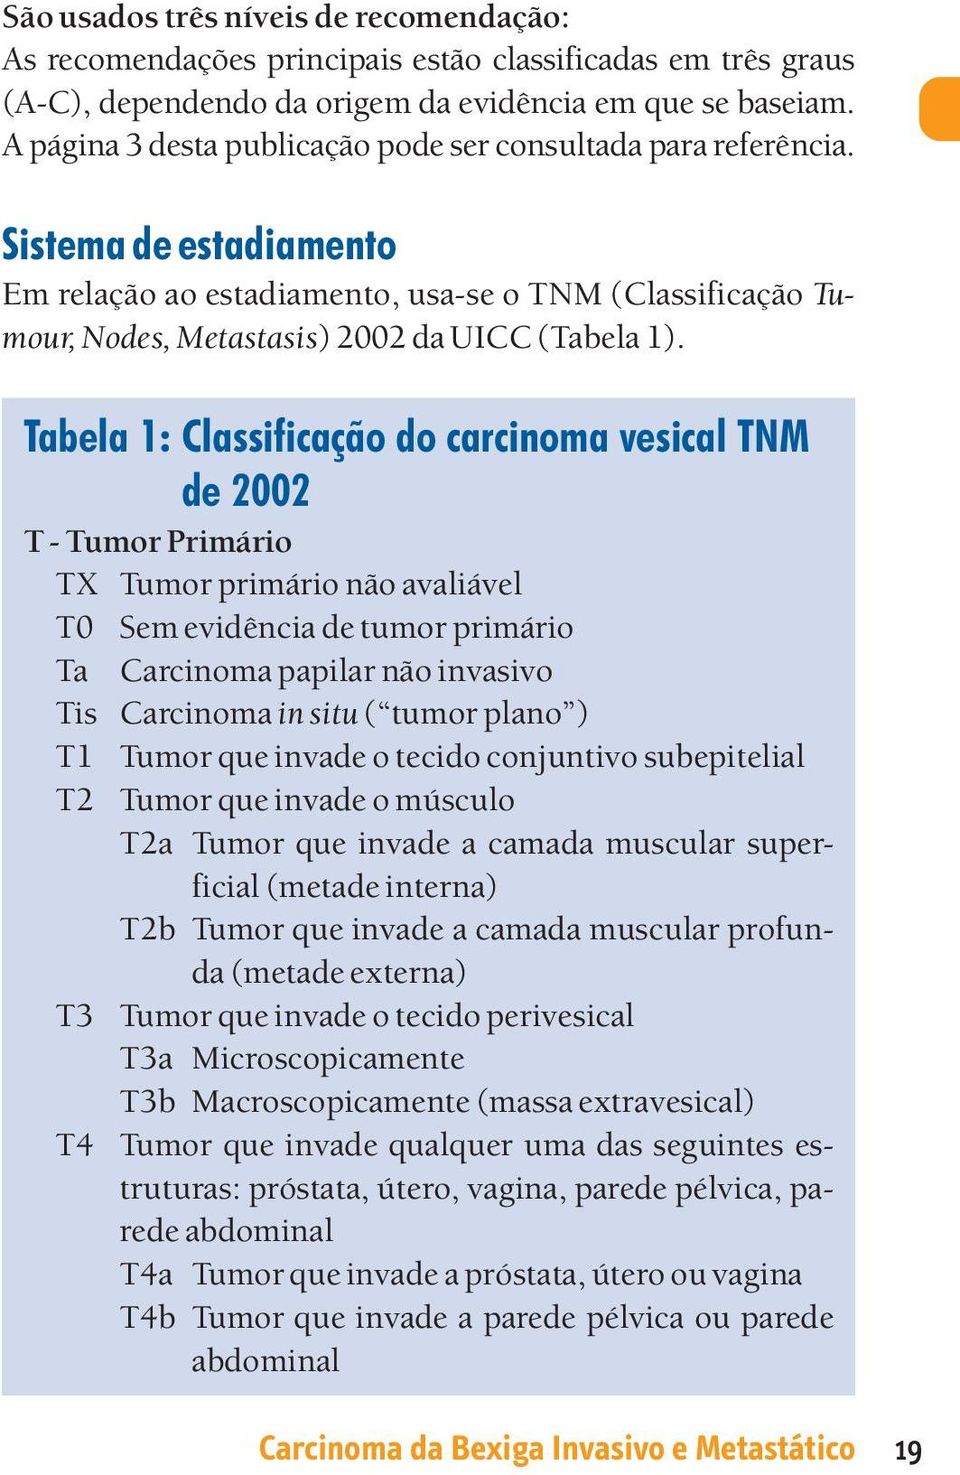 Tabela 1: Classificação do carcinoma vesical TNM de 2002 T - Tumor Primário TX Tumor primário não avaliável T0 Sem evidência de tumor primário Ta Carcinoma papilar não invasivo Tis Carcinoma in situ